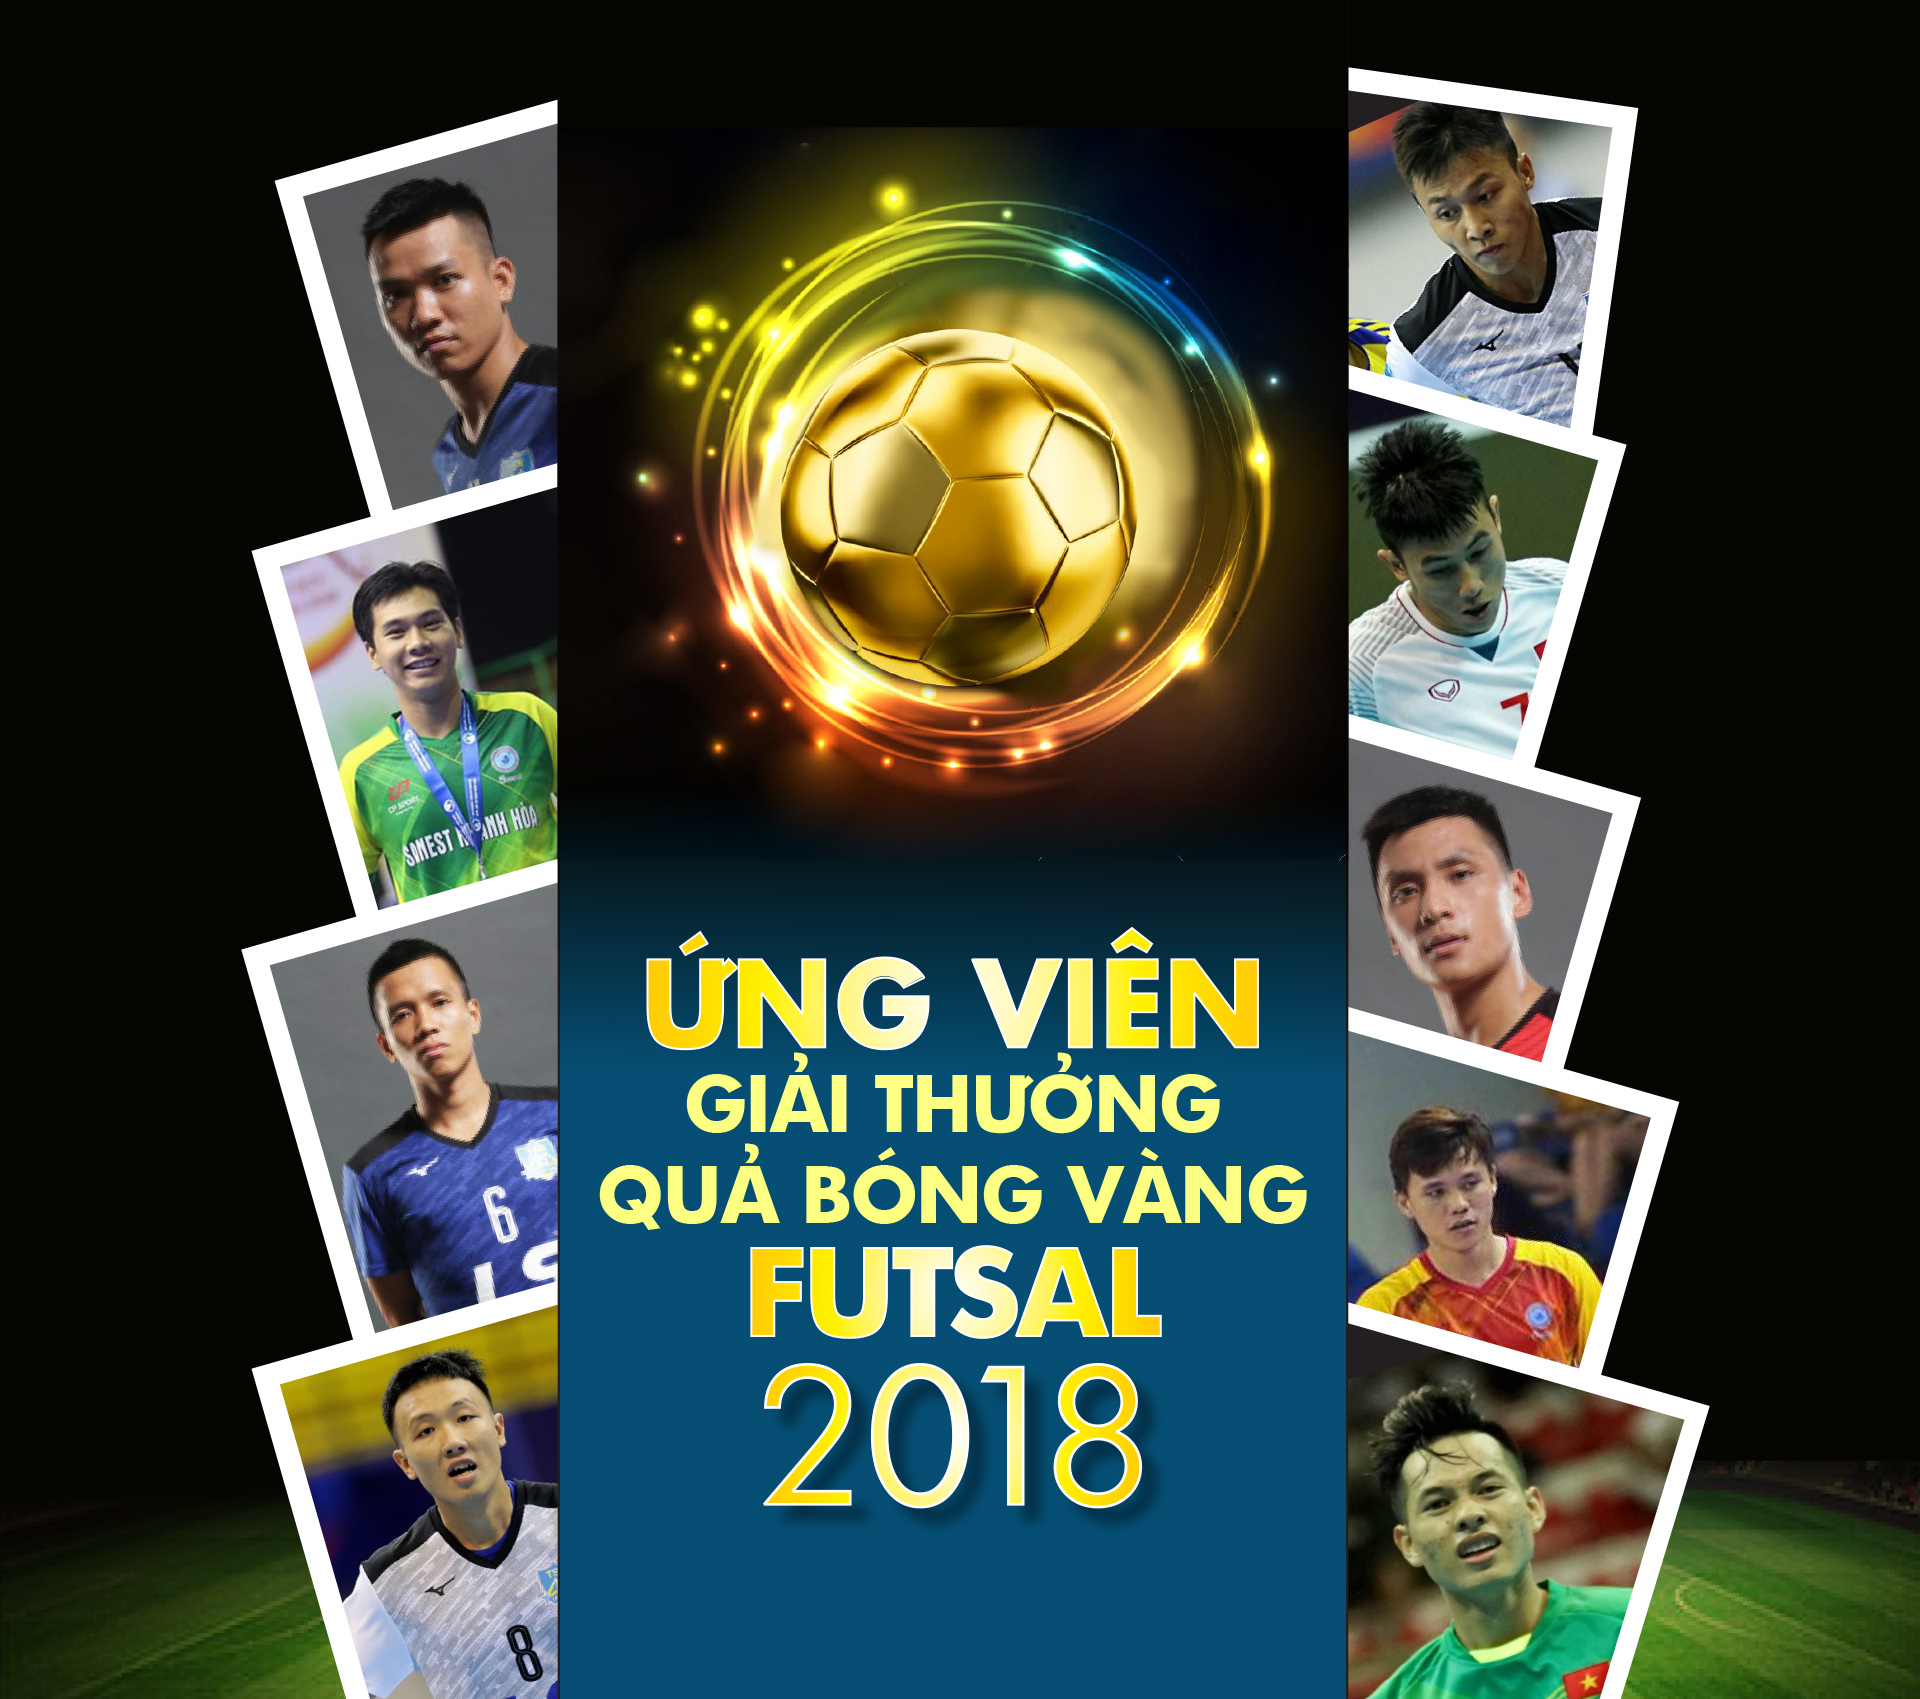 Danh sách ứng viên giải Quả bóng vàng futsal 2018